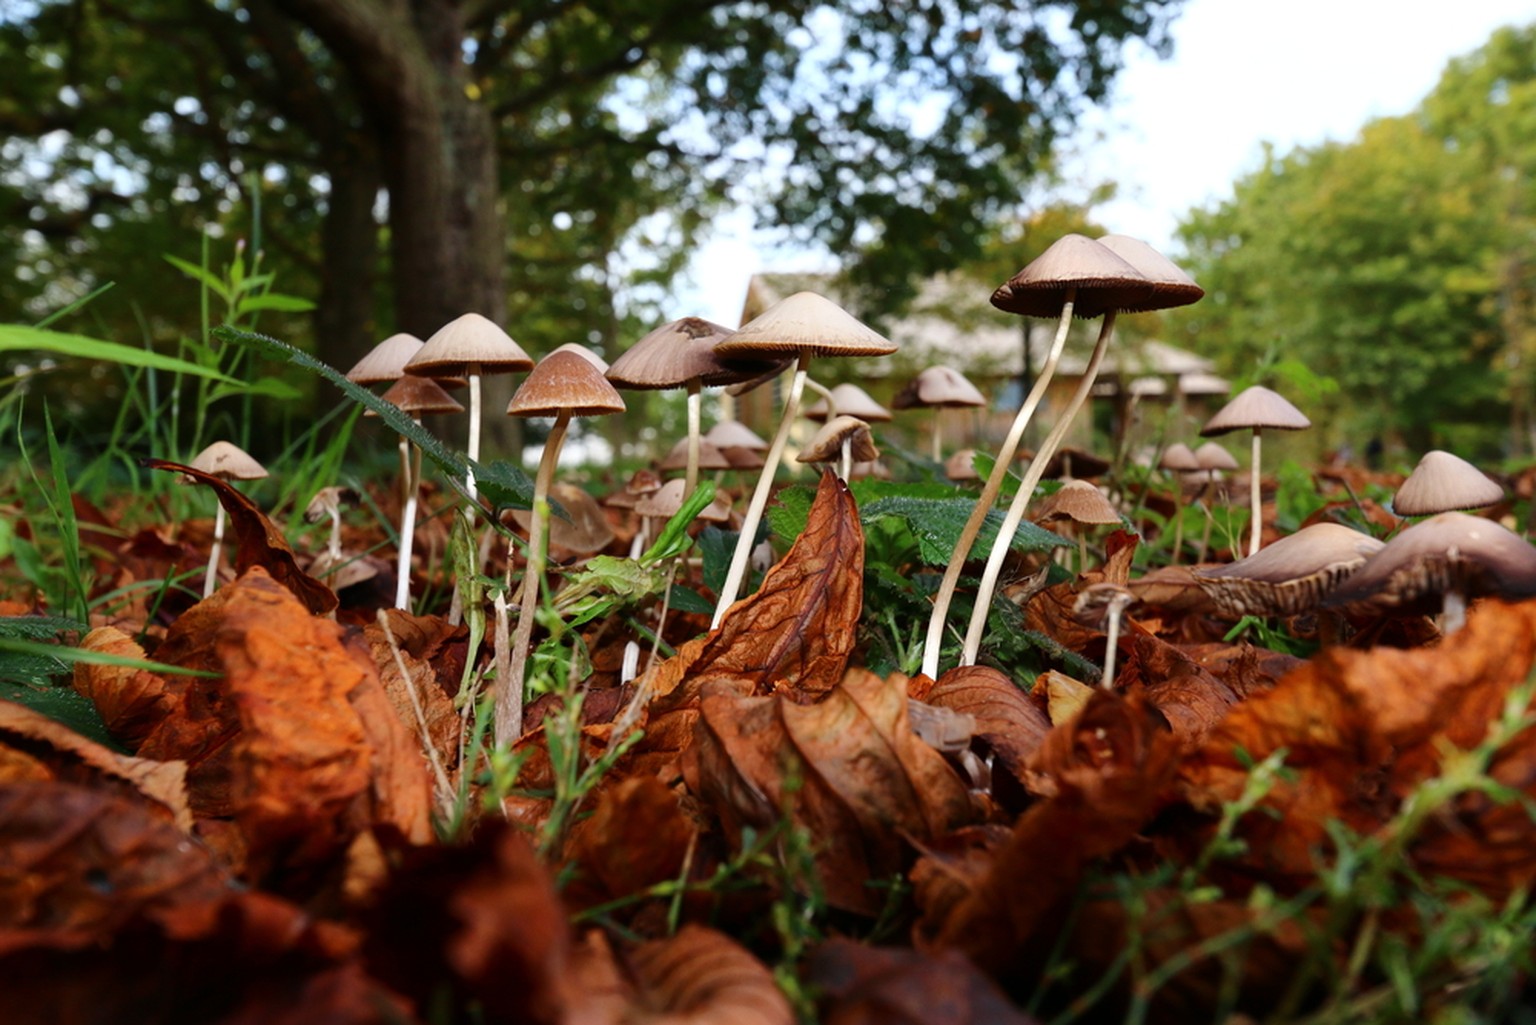 Zauberpilze, Magic Mushrooms. Die meisten gehören zur Gattung der Kahlköpfe (Psilocybe)